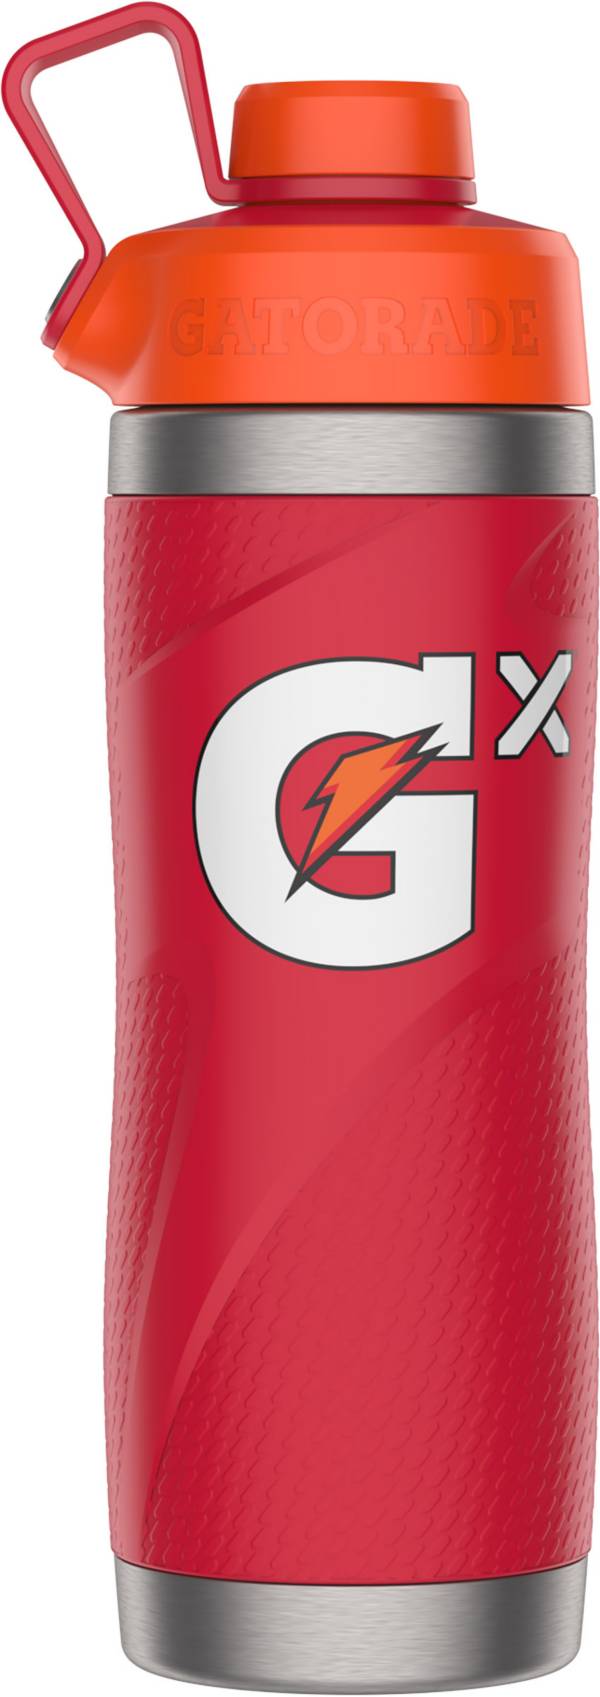 Gatorade Gx 30 oz. Stainless Steel Bottle product image